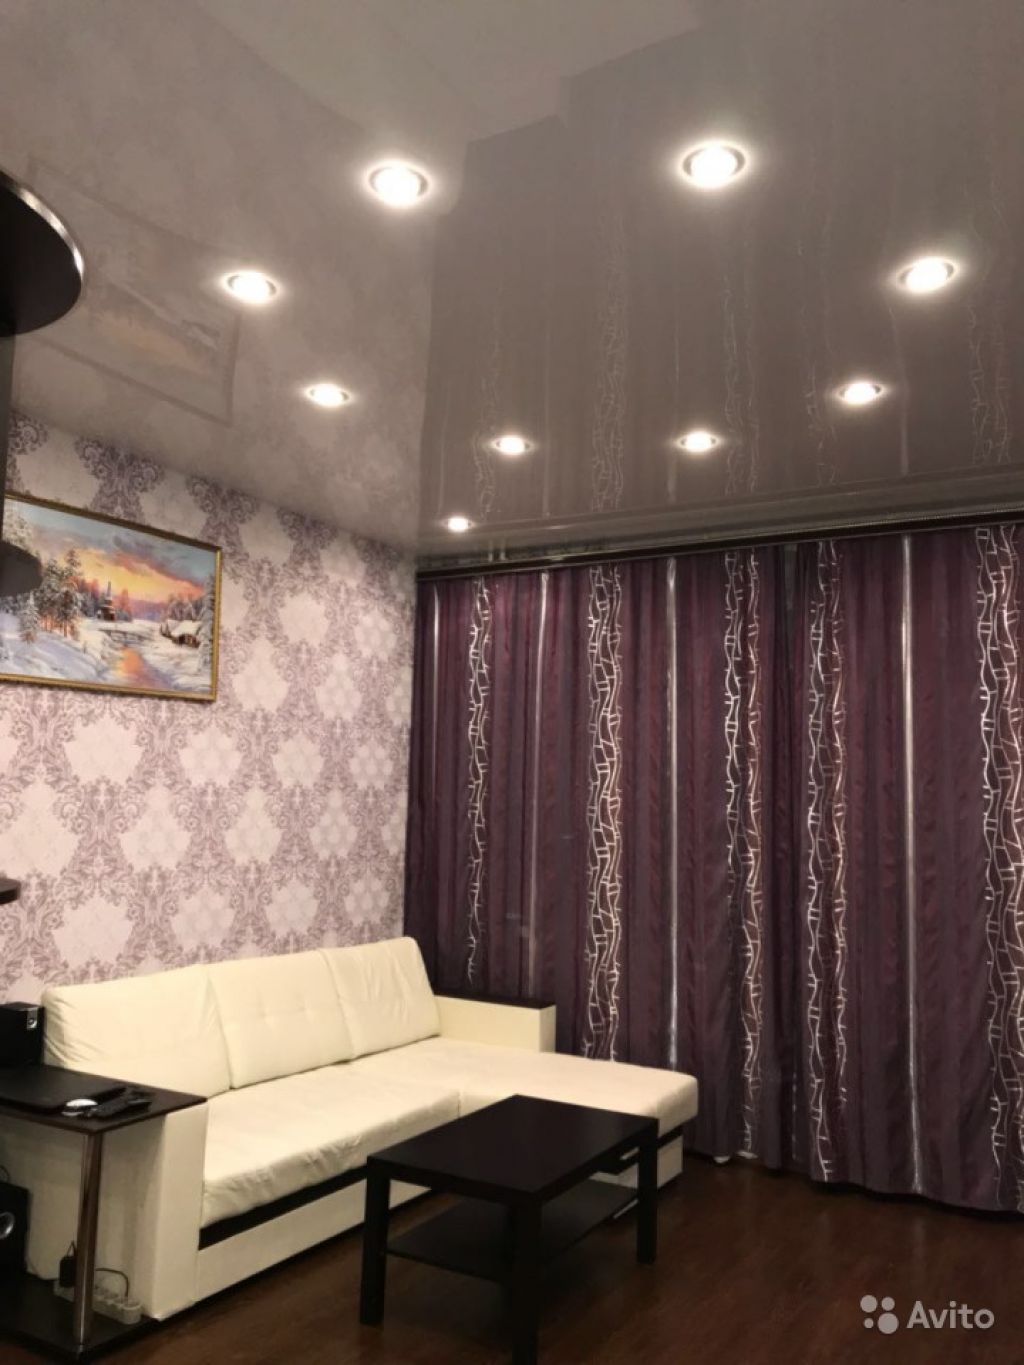 Продам квартиру 1-к квартира 39 м² на 6 этаже 17-этажного панельного дома в Москве. Фото 1